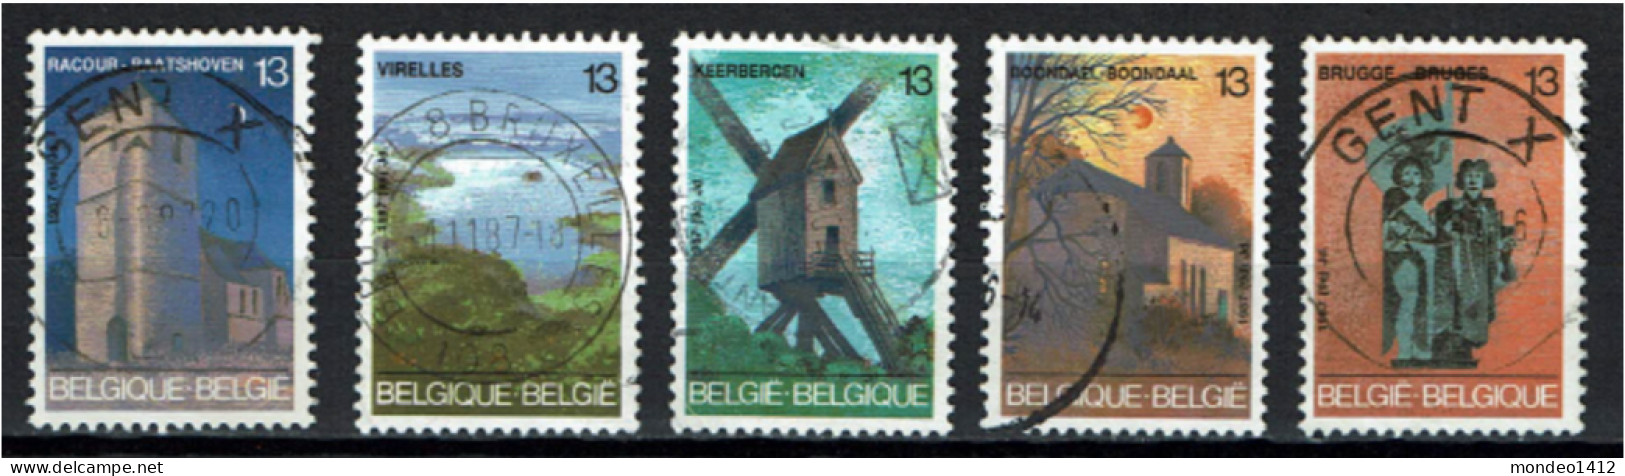 België 1987 OBP 2254/2258 - Y&T 2254/58 - Toerisme, Raatshoven, Chimay, Keerbergen, Brussel, Brugge - Used Stamps